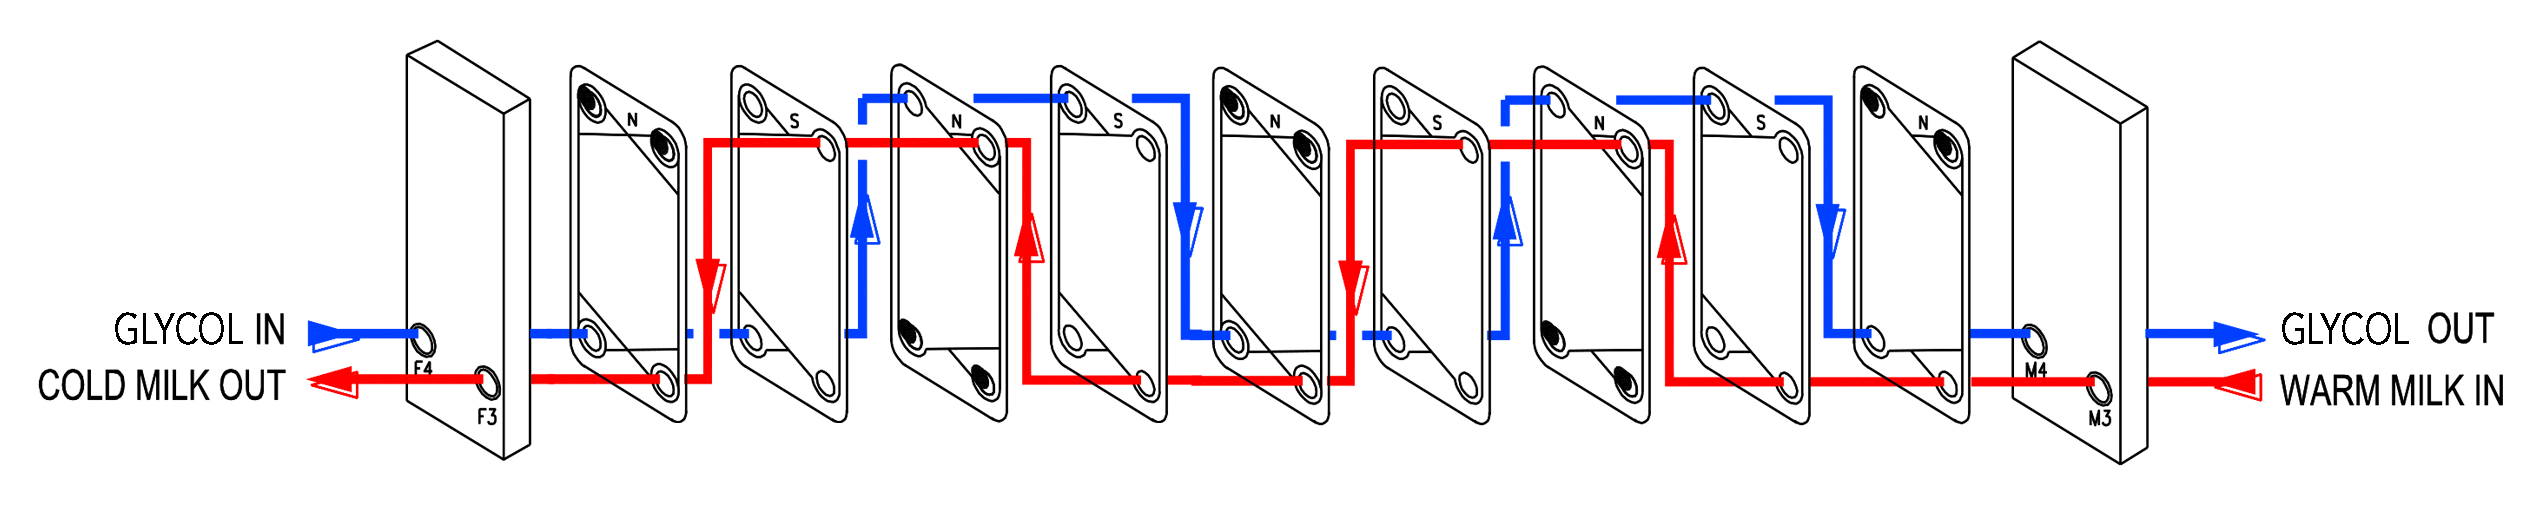 robotic series Diagram